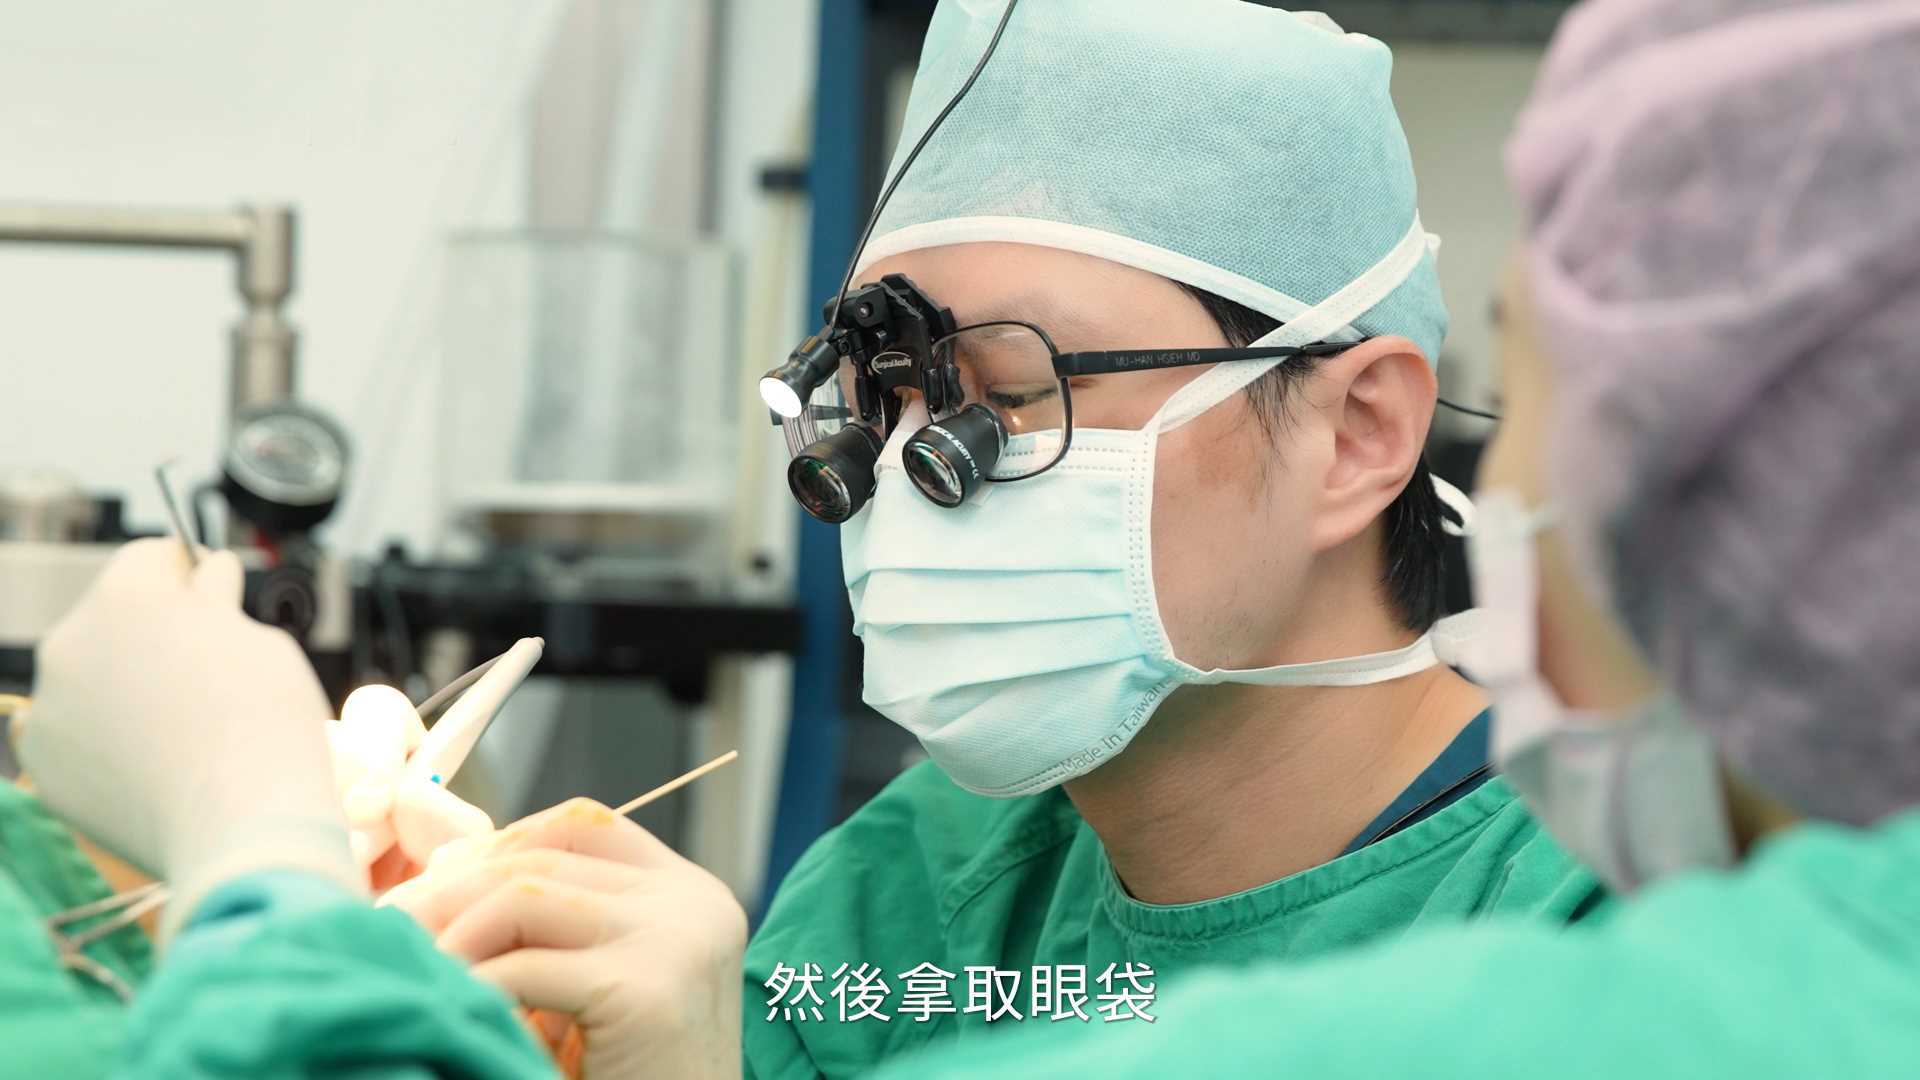 台北雷射汽化眼袋,眼袋手術,台灣台北眼袋手術權威醫師謝牧翰